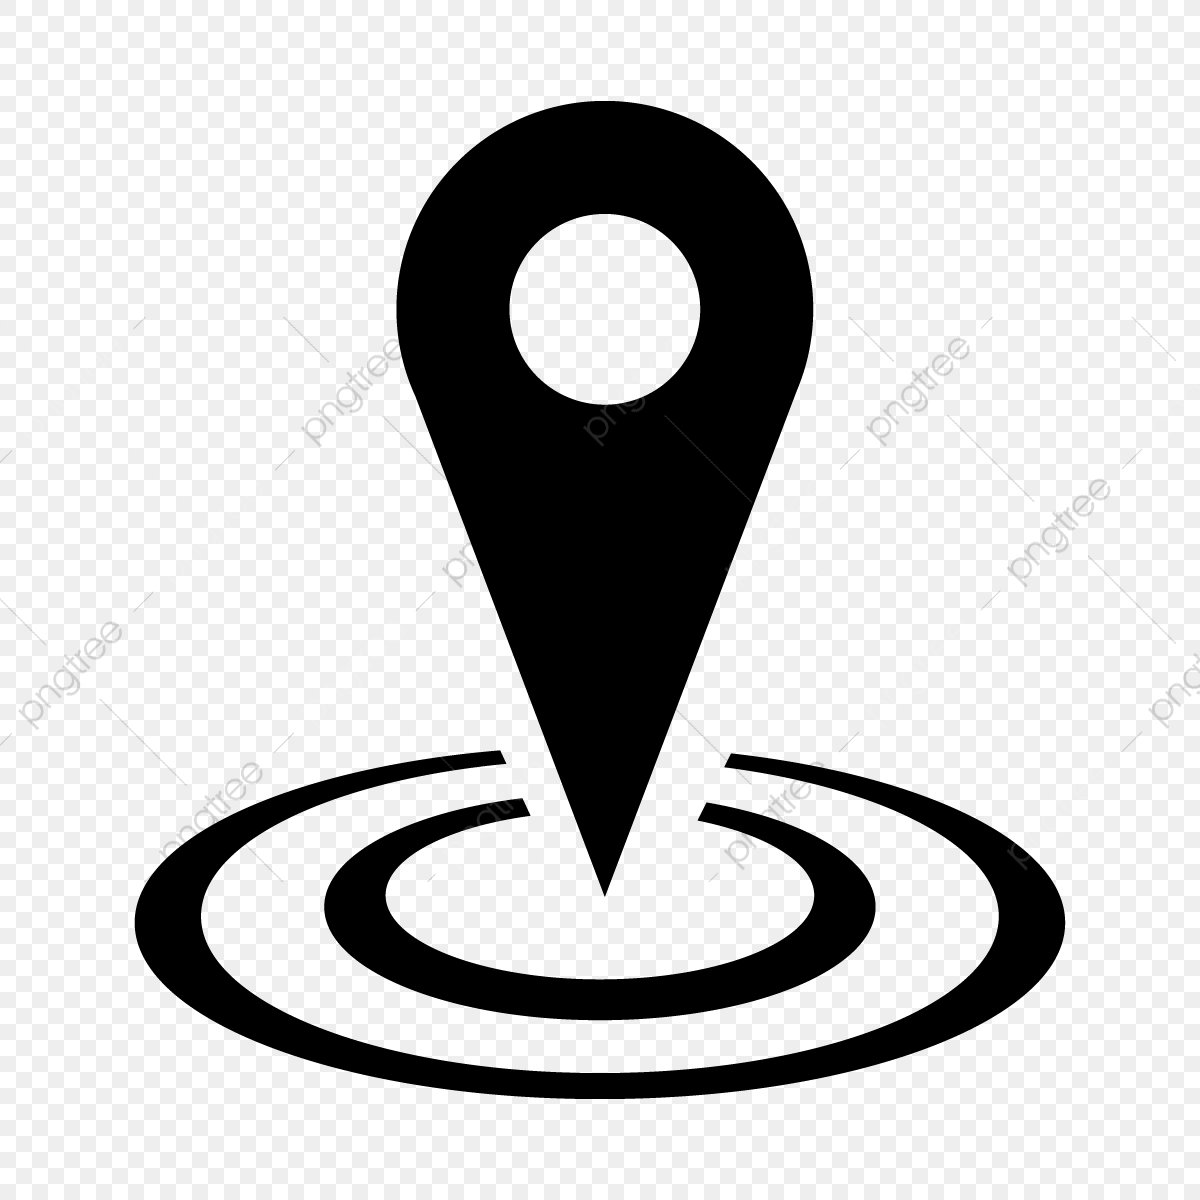 Символ местоположения. Значок местонахождения. Локация иконка. Иконка геолокации.